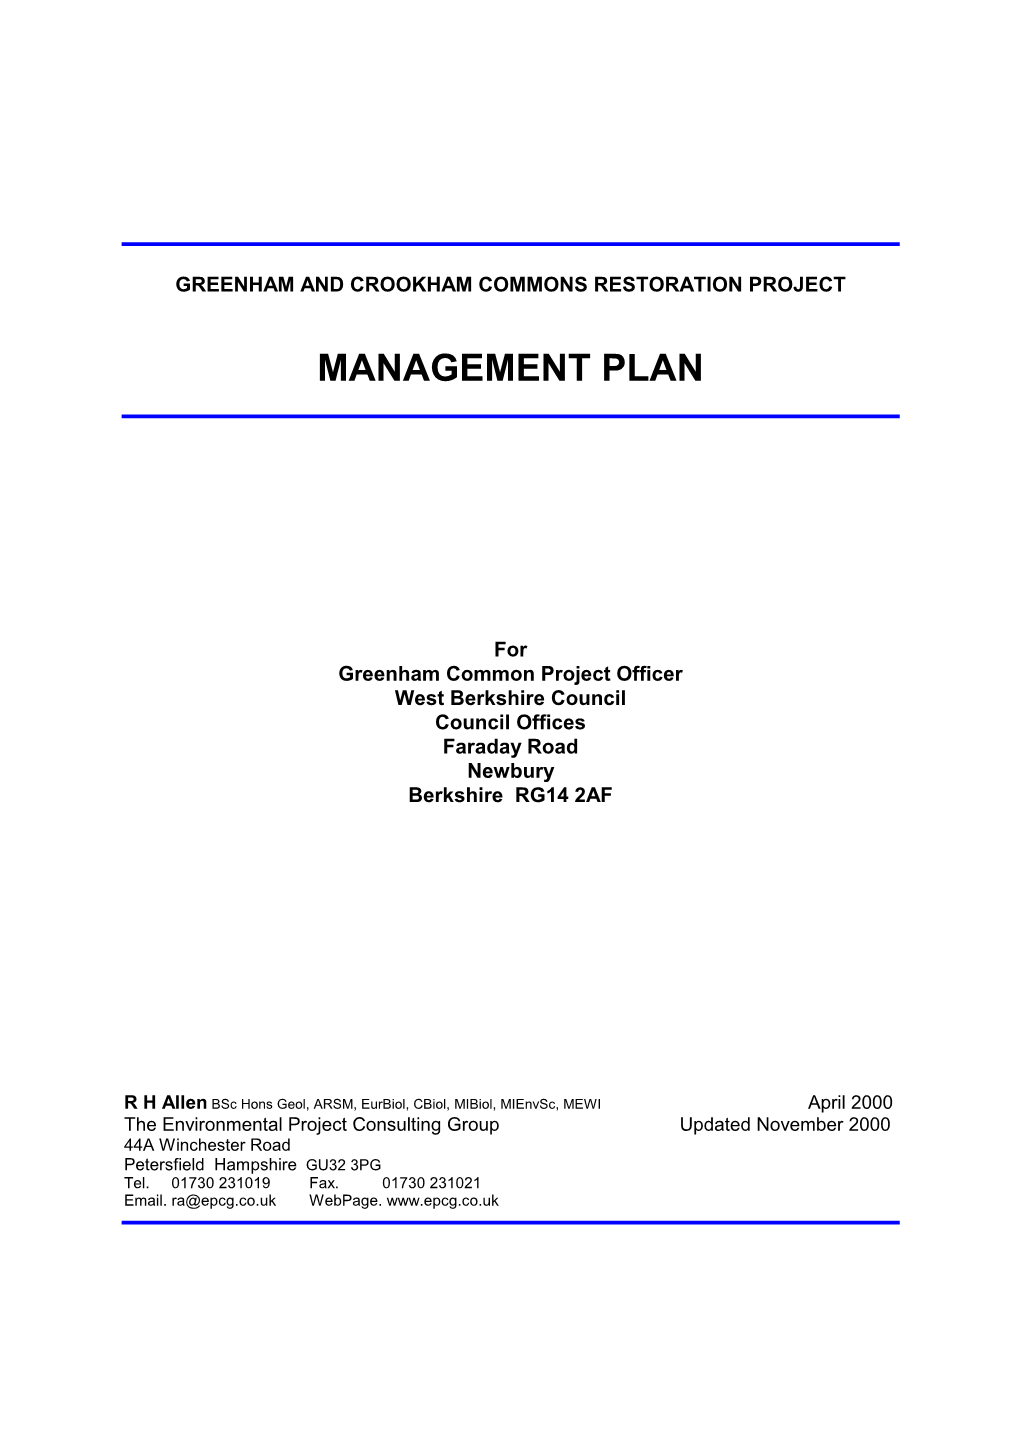 Previous Management Plan